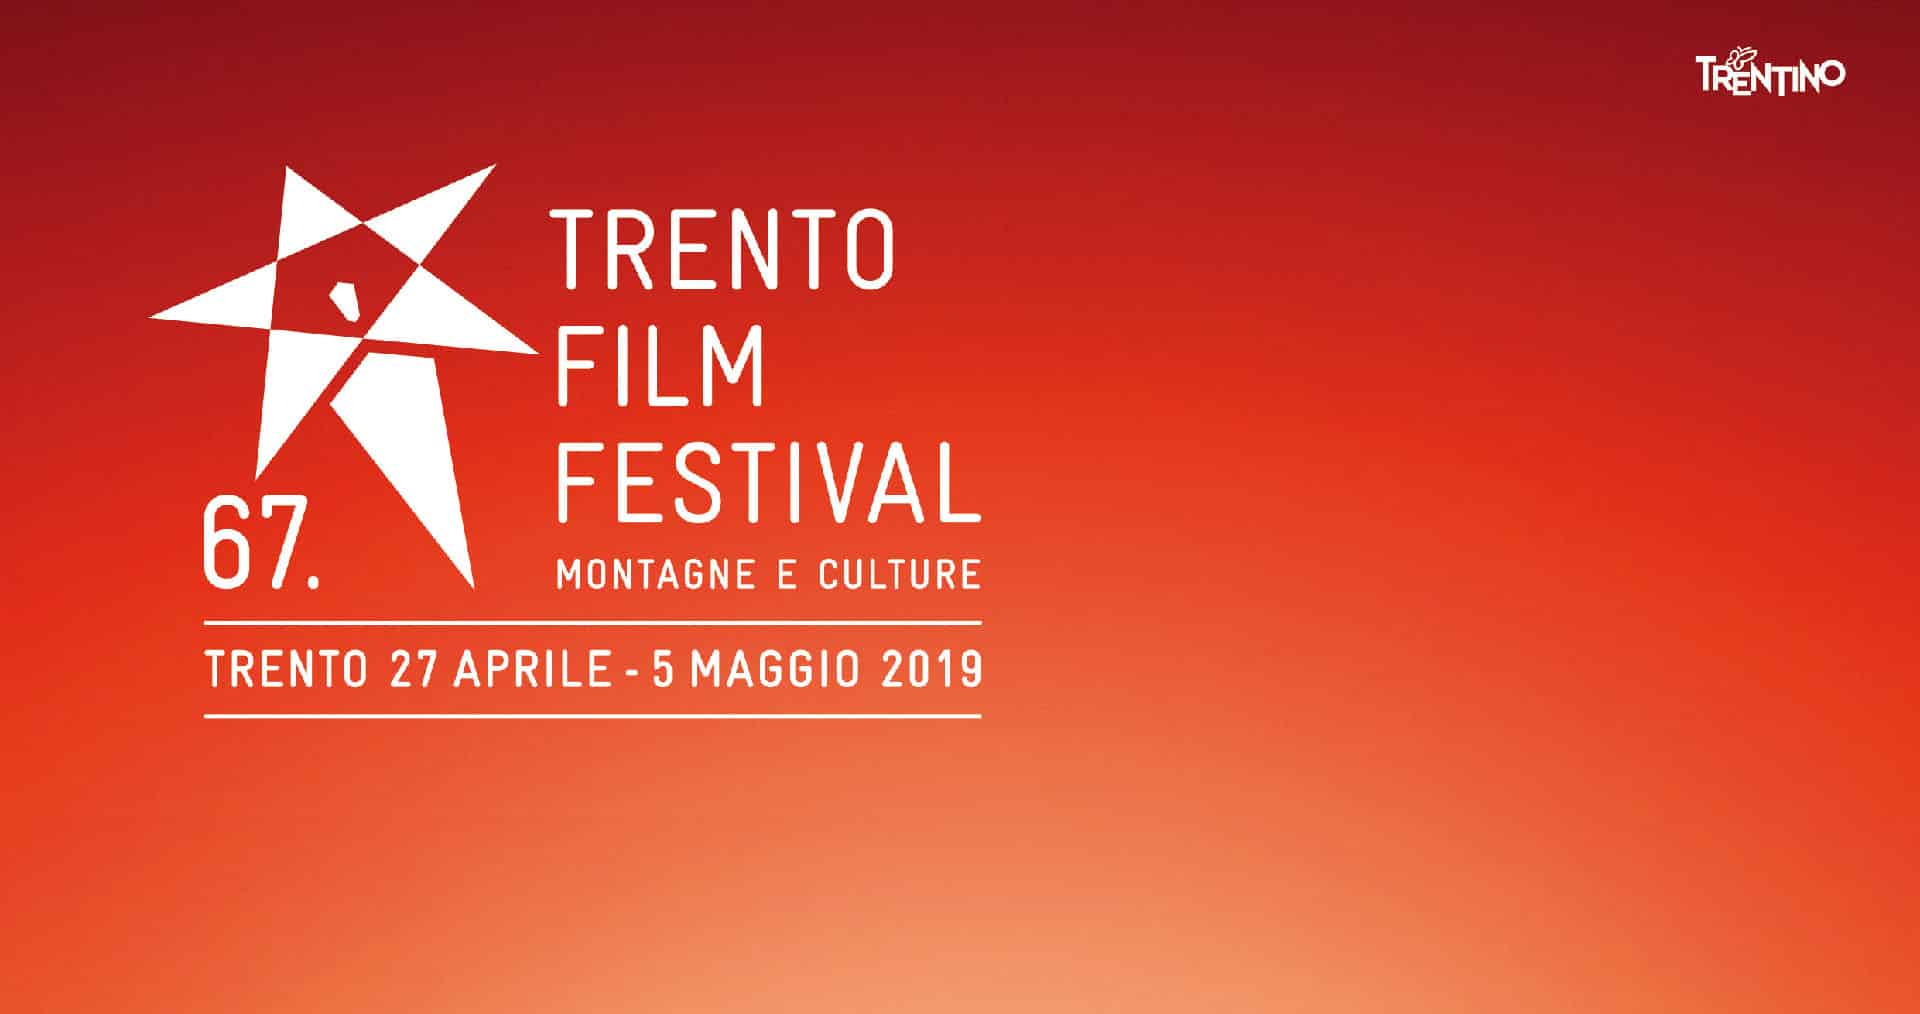 Trento Film Festival 2019: il programma della 67° edizione